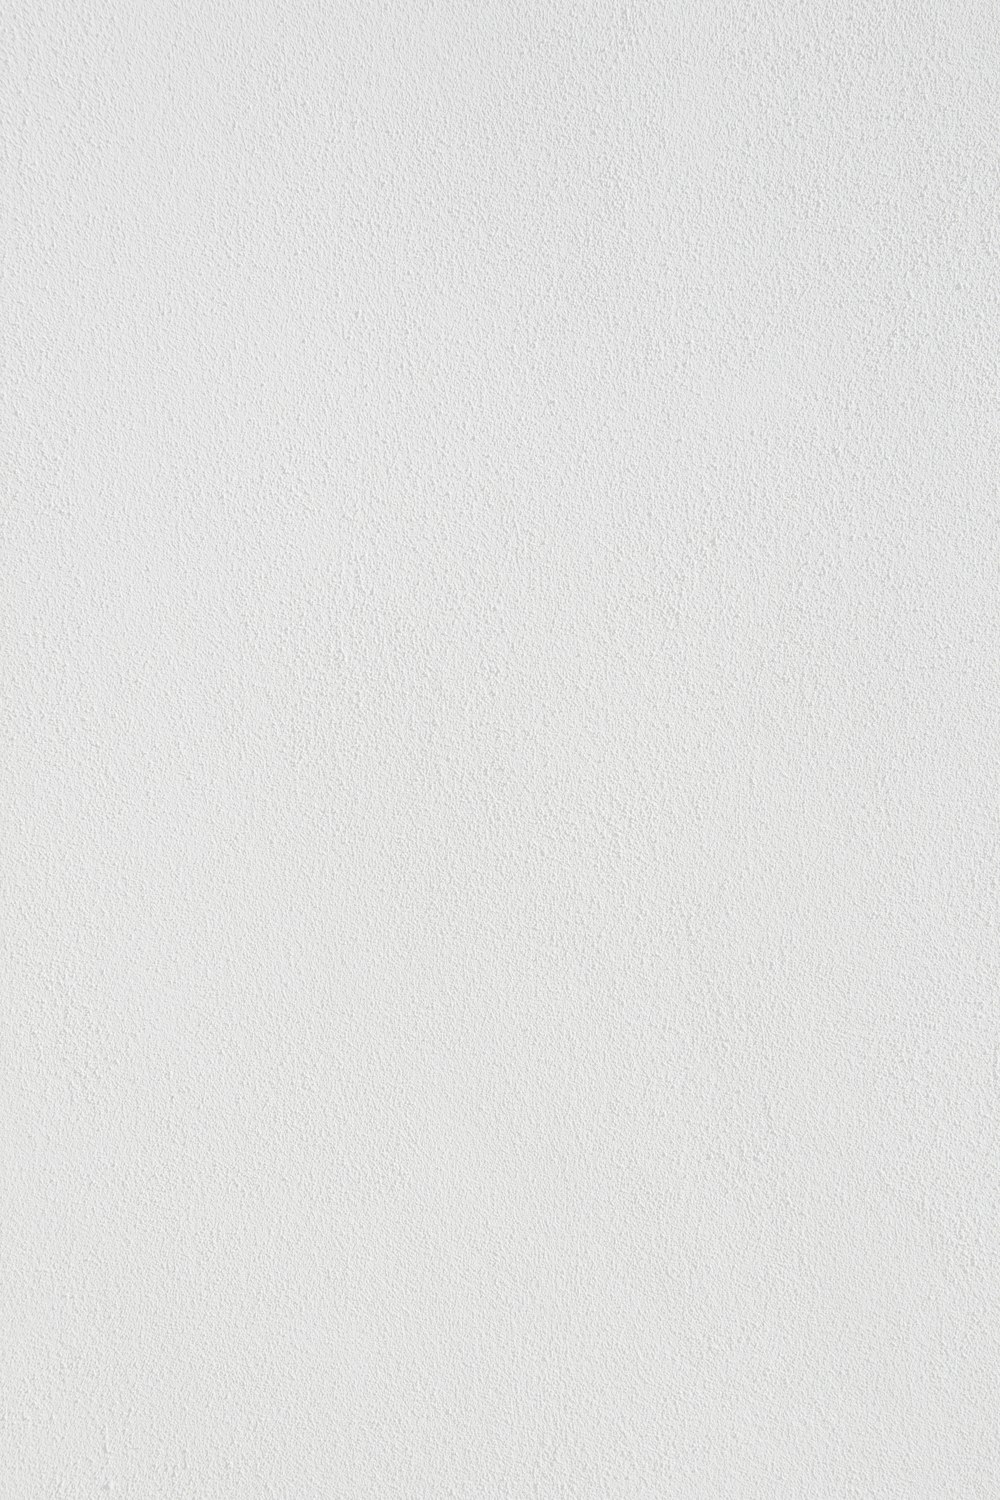 pintura de parede branca com linha preta